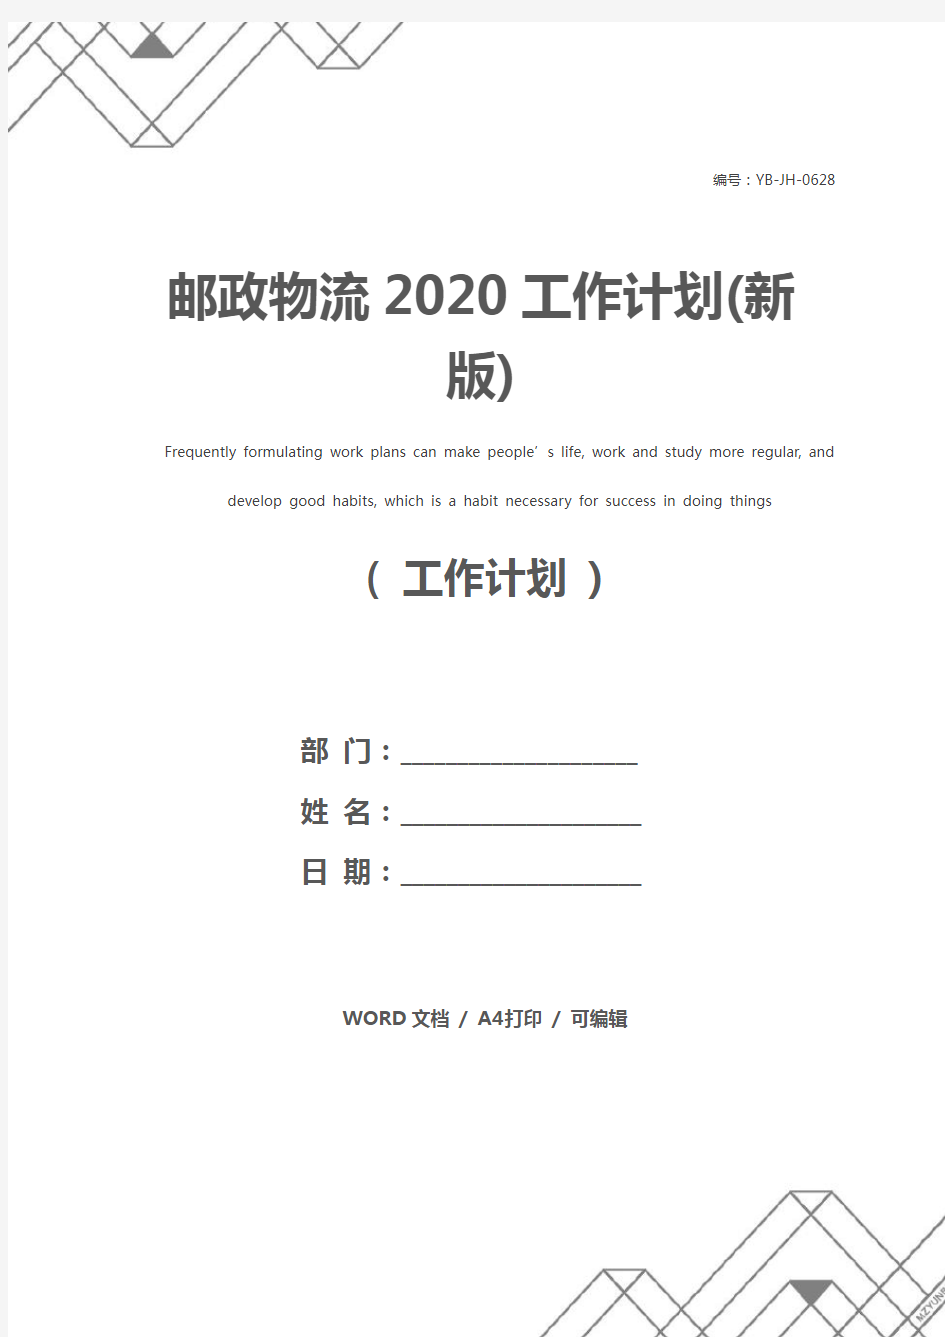 邮政物流2020工作计划(新版)